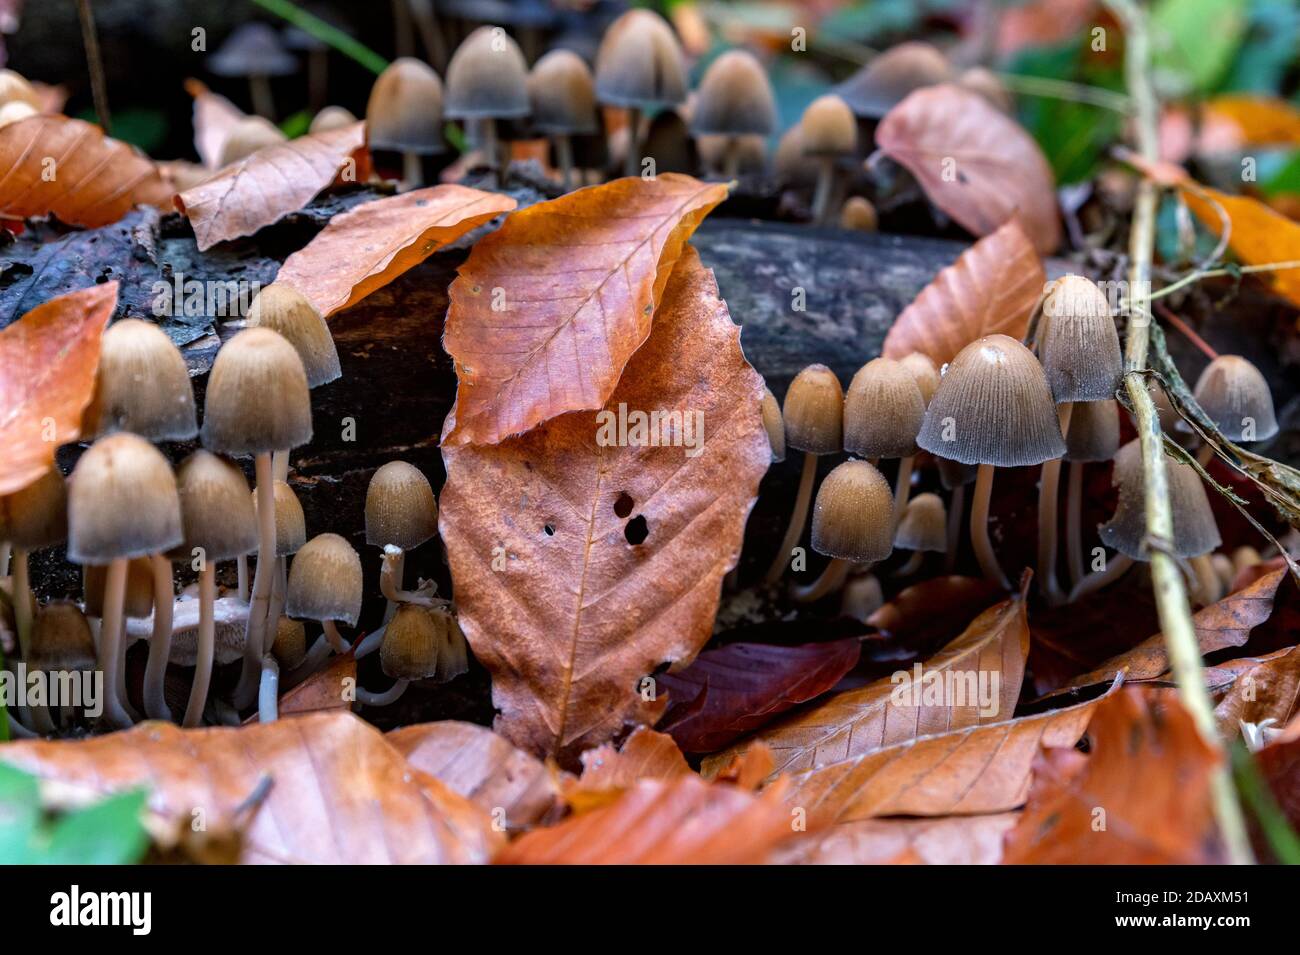 Close up of Coprinellus micaceus or fungus mushroom Stock Photo